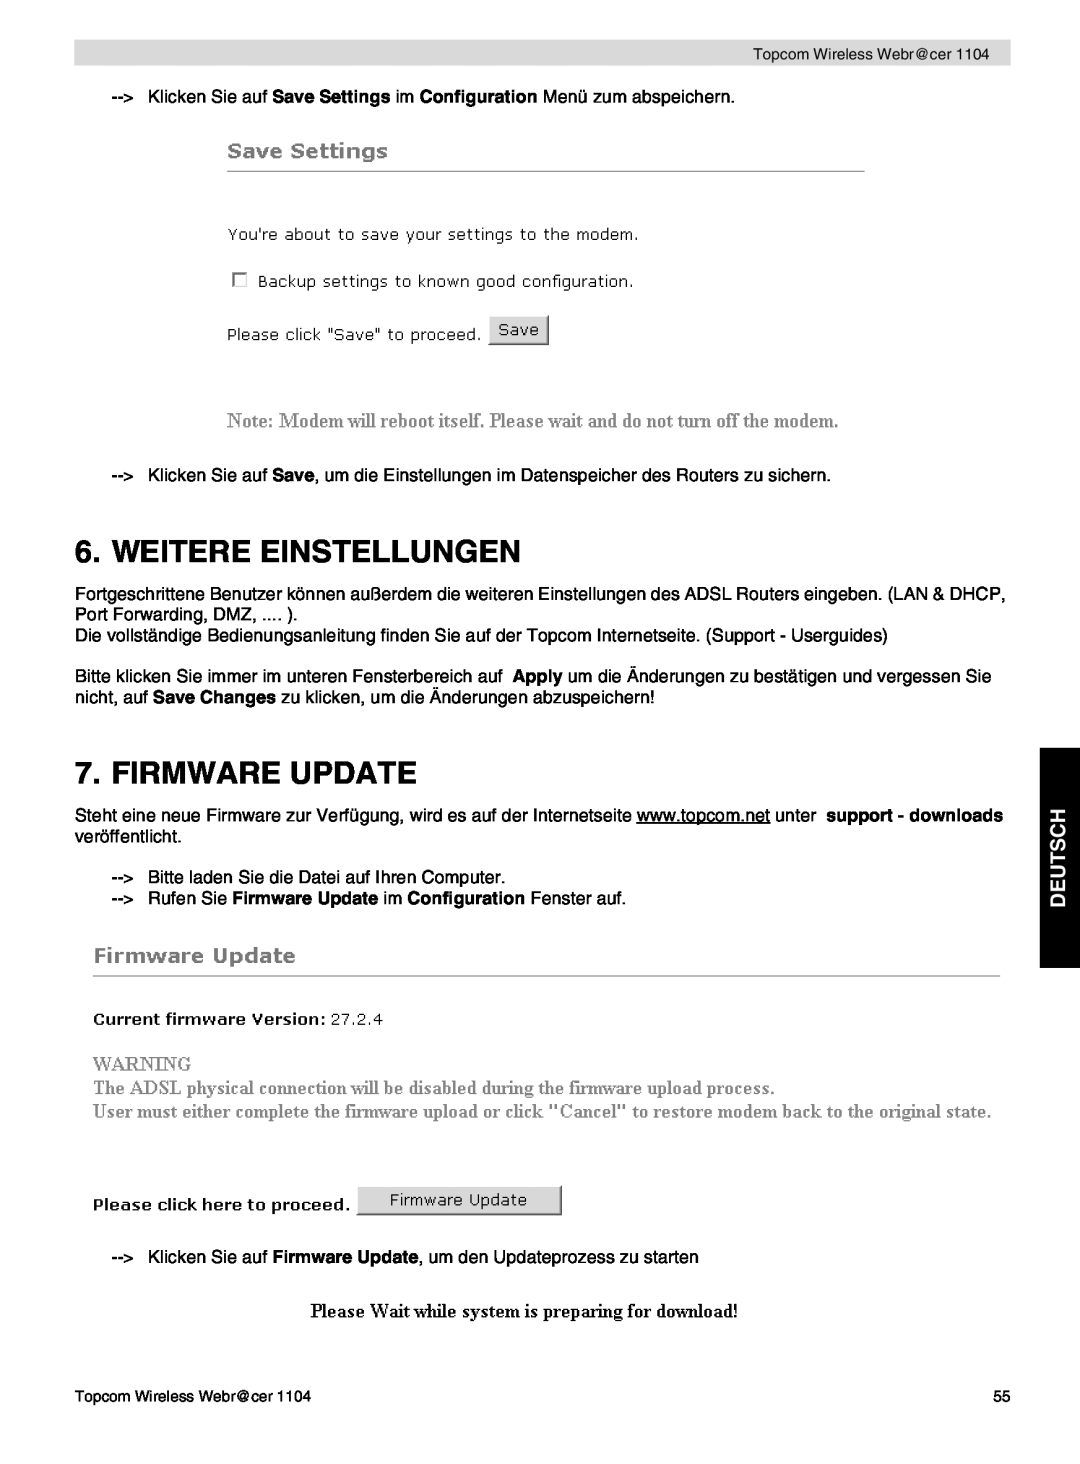 Topcom 1104 manual do utilizador Weitere Einstellungen, Deutsch, Rufen Sie Firmware Update im Configuration Fenster auf 